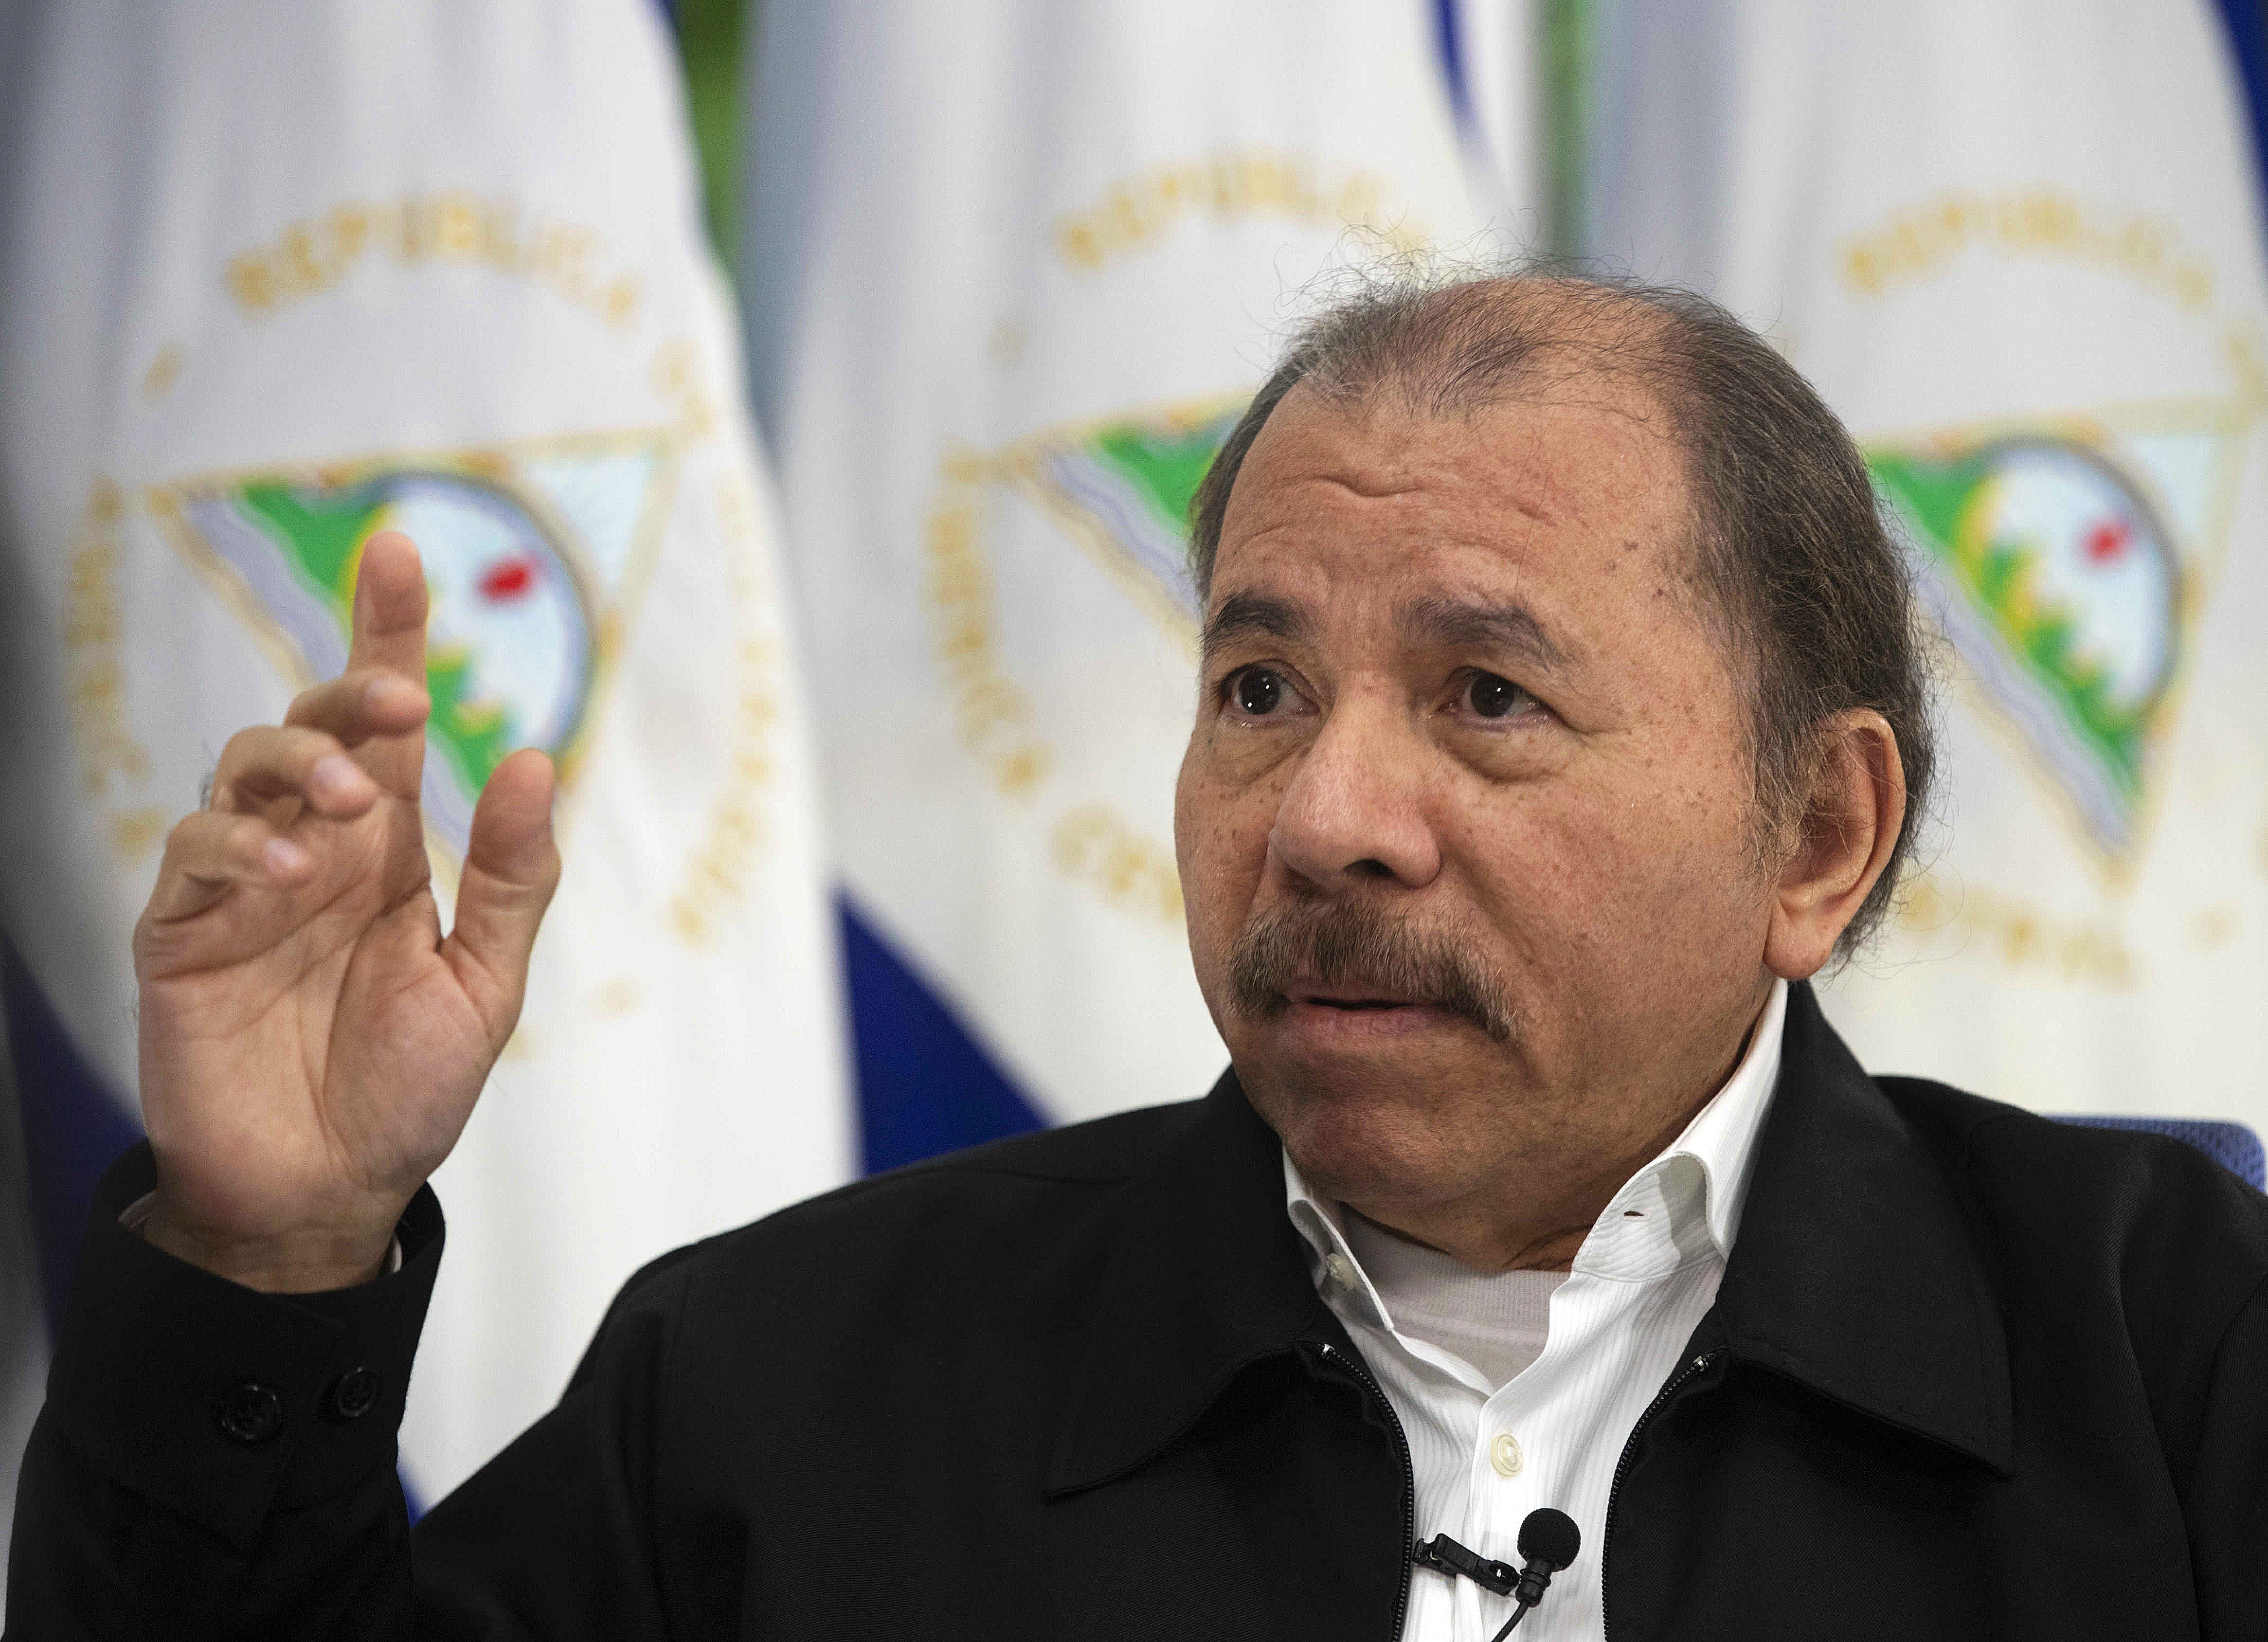 Maratonista que corre “contra Ortega” fue liberado en Nicaragua